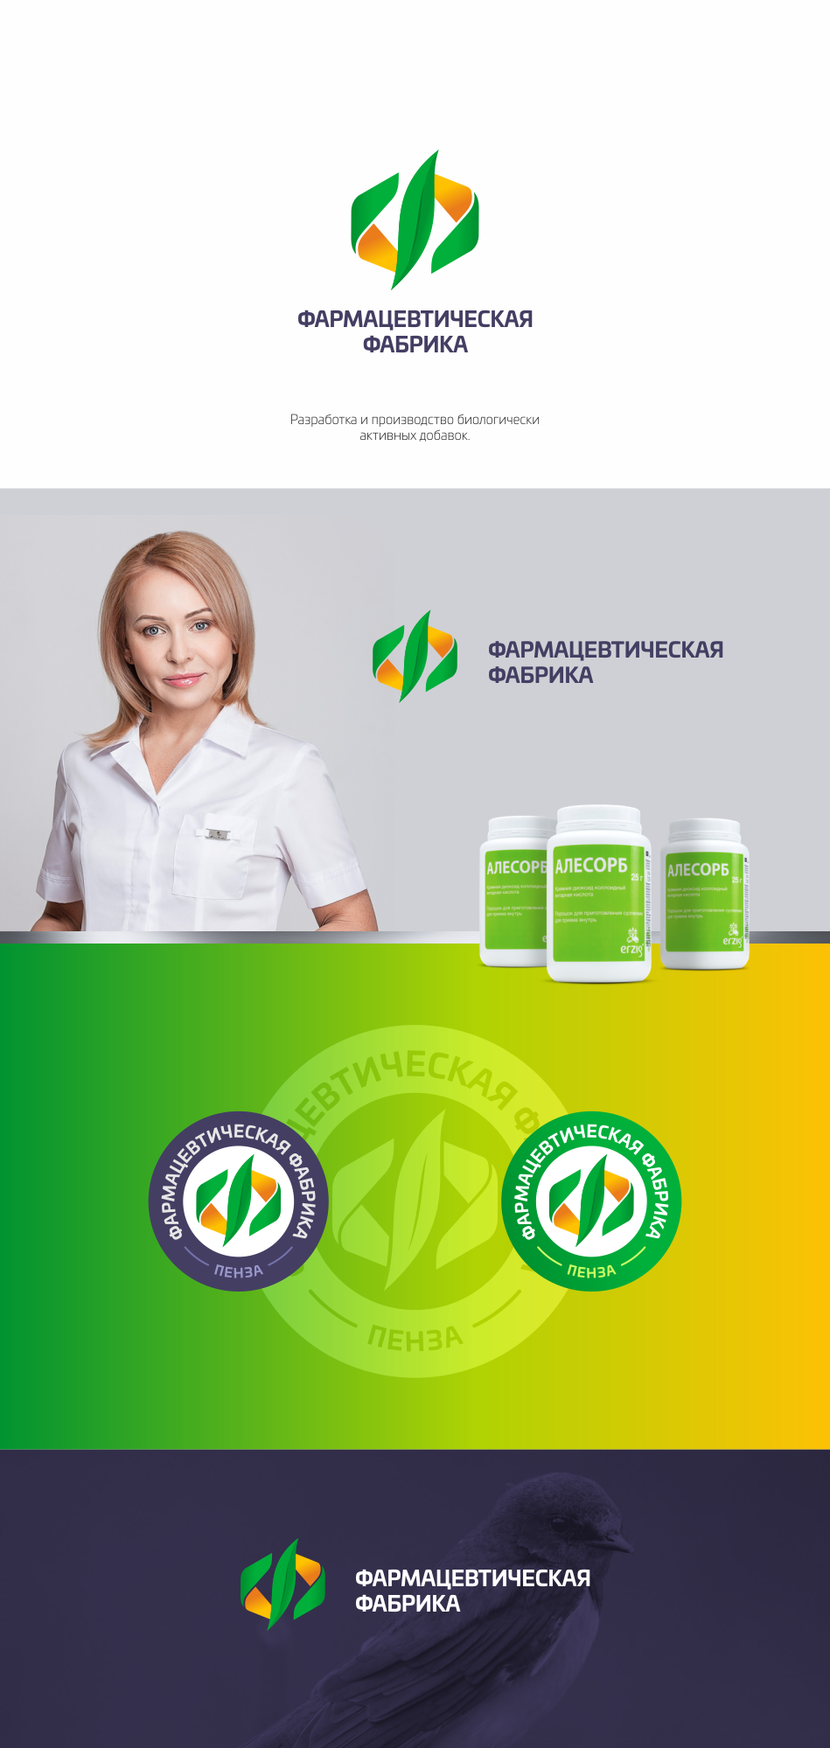 Фармацевтическая фабрика - Разработка логотипа фармацевтической компании